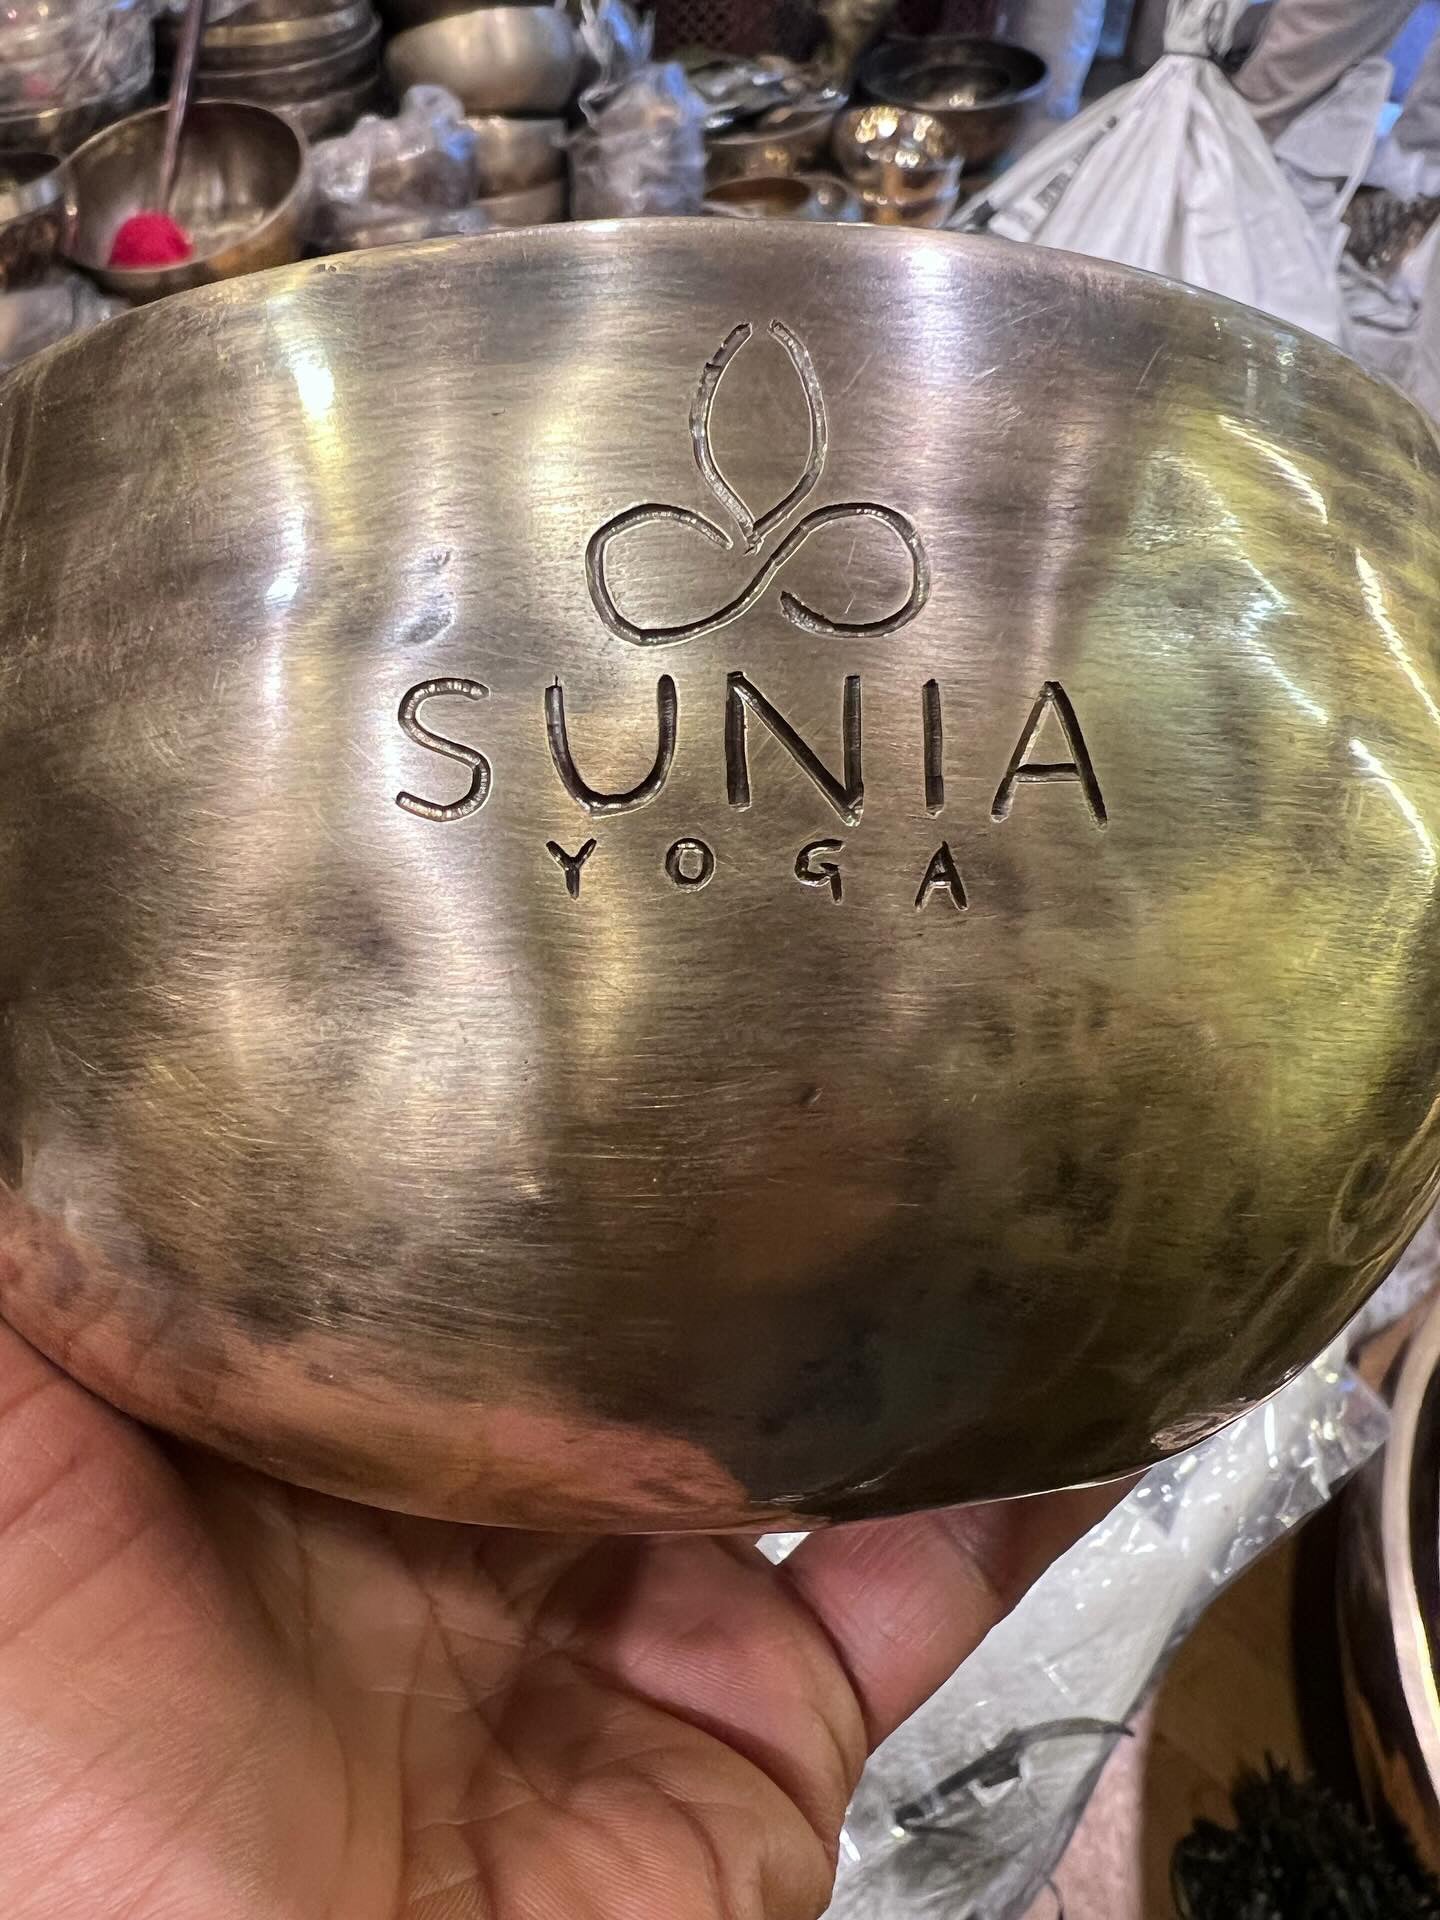 Sunia Yoga Limited Edition Singing Bowls!